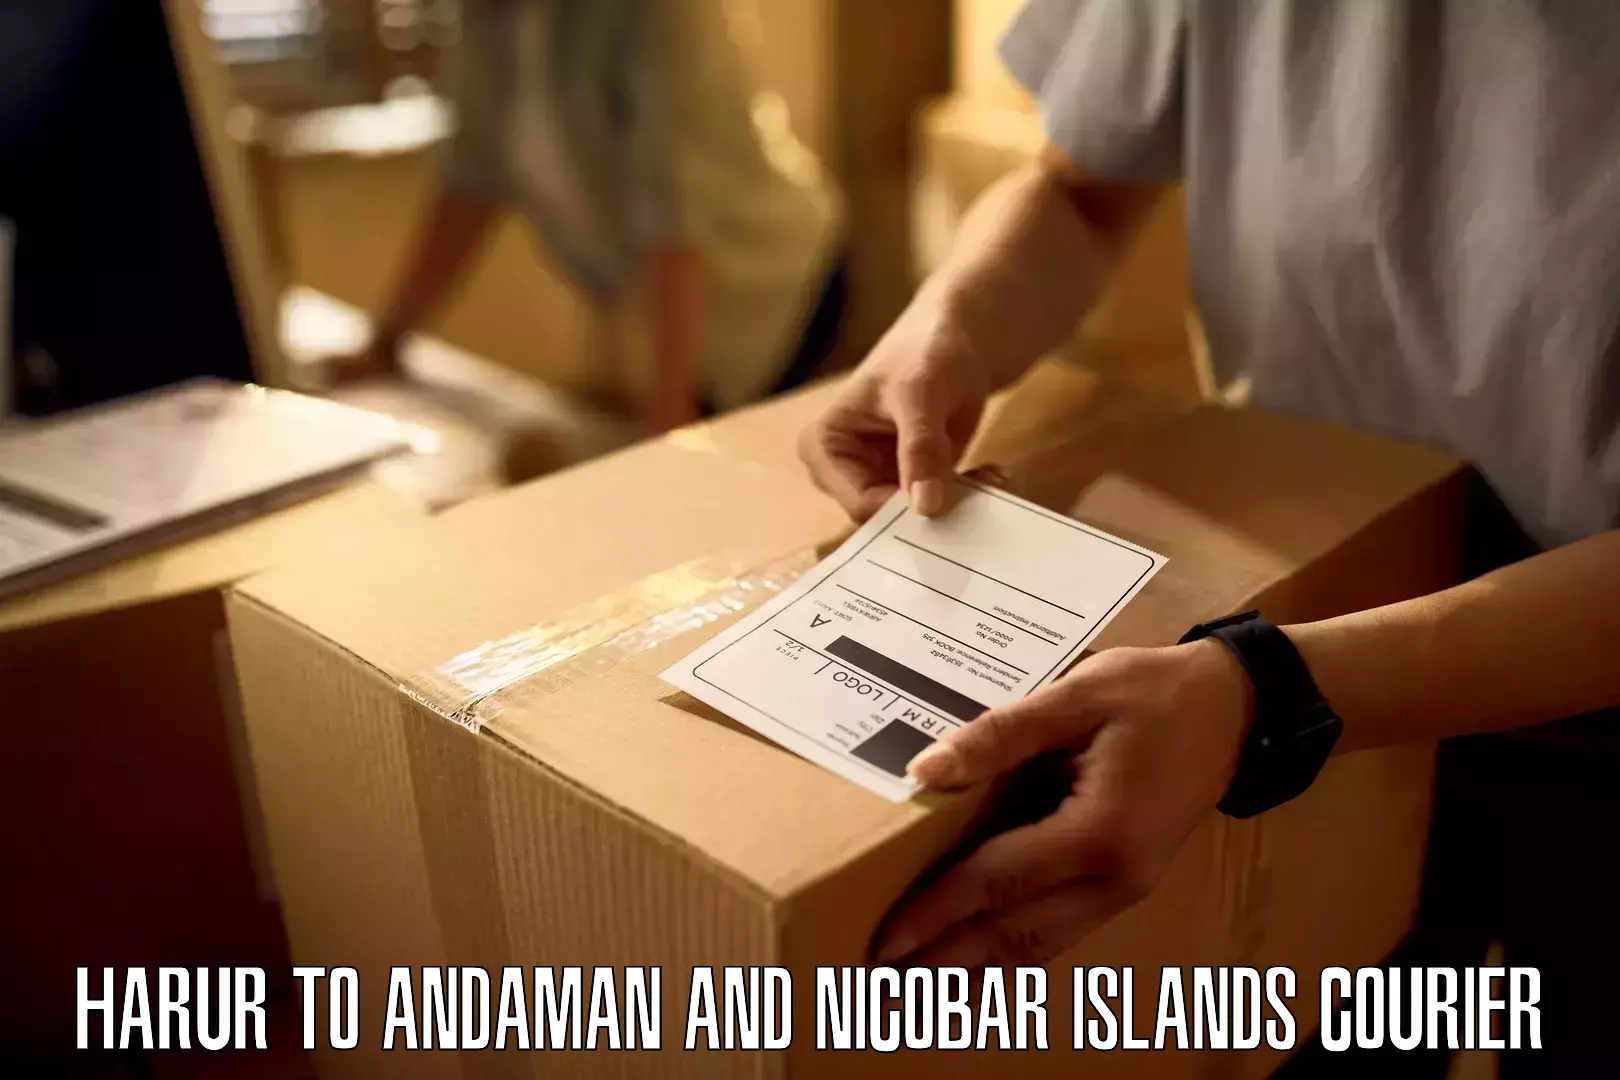 Remote area delivery Harur to Andaman and Nicobar Islands